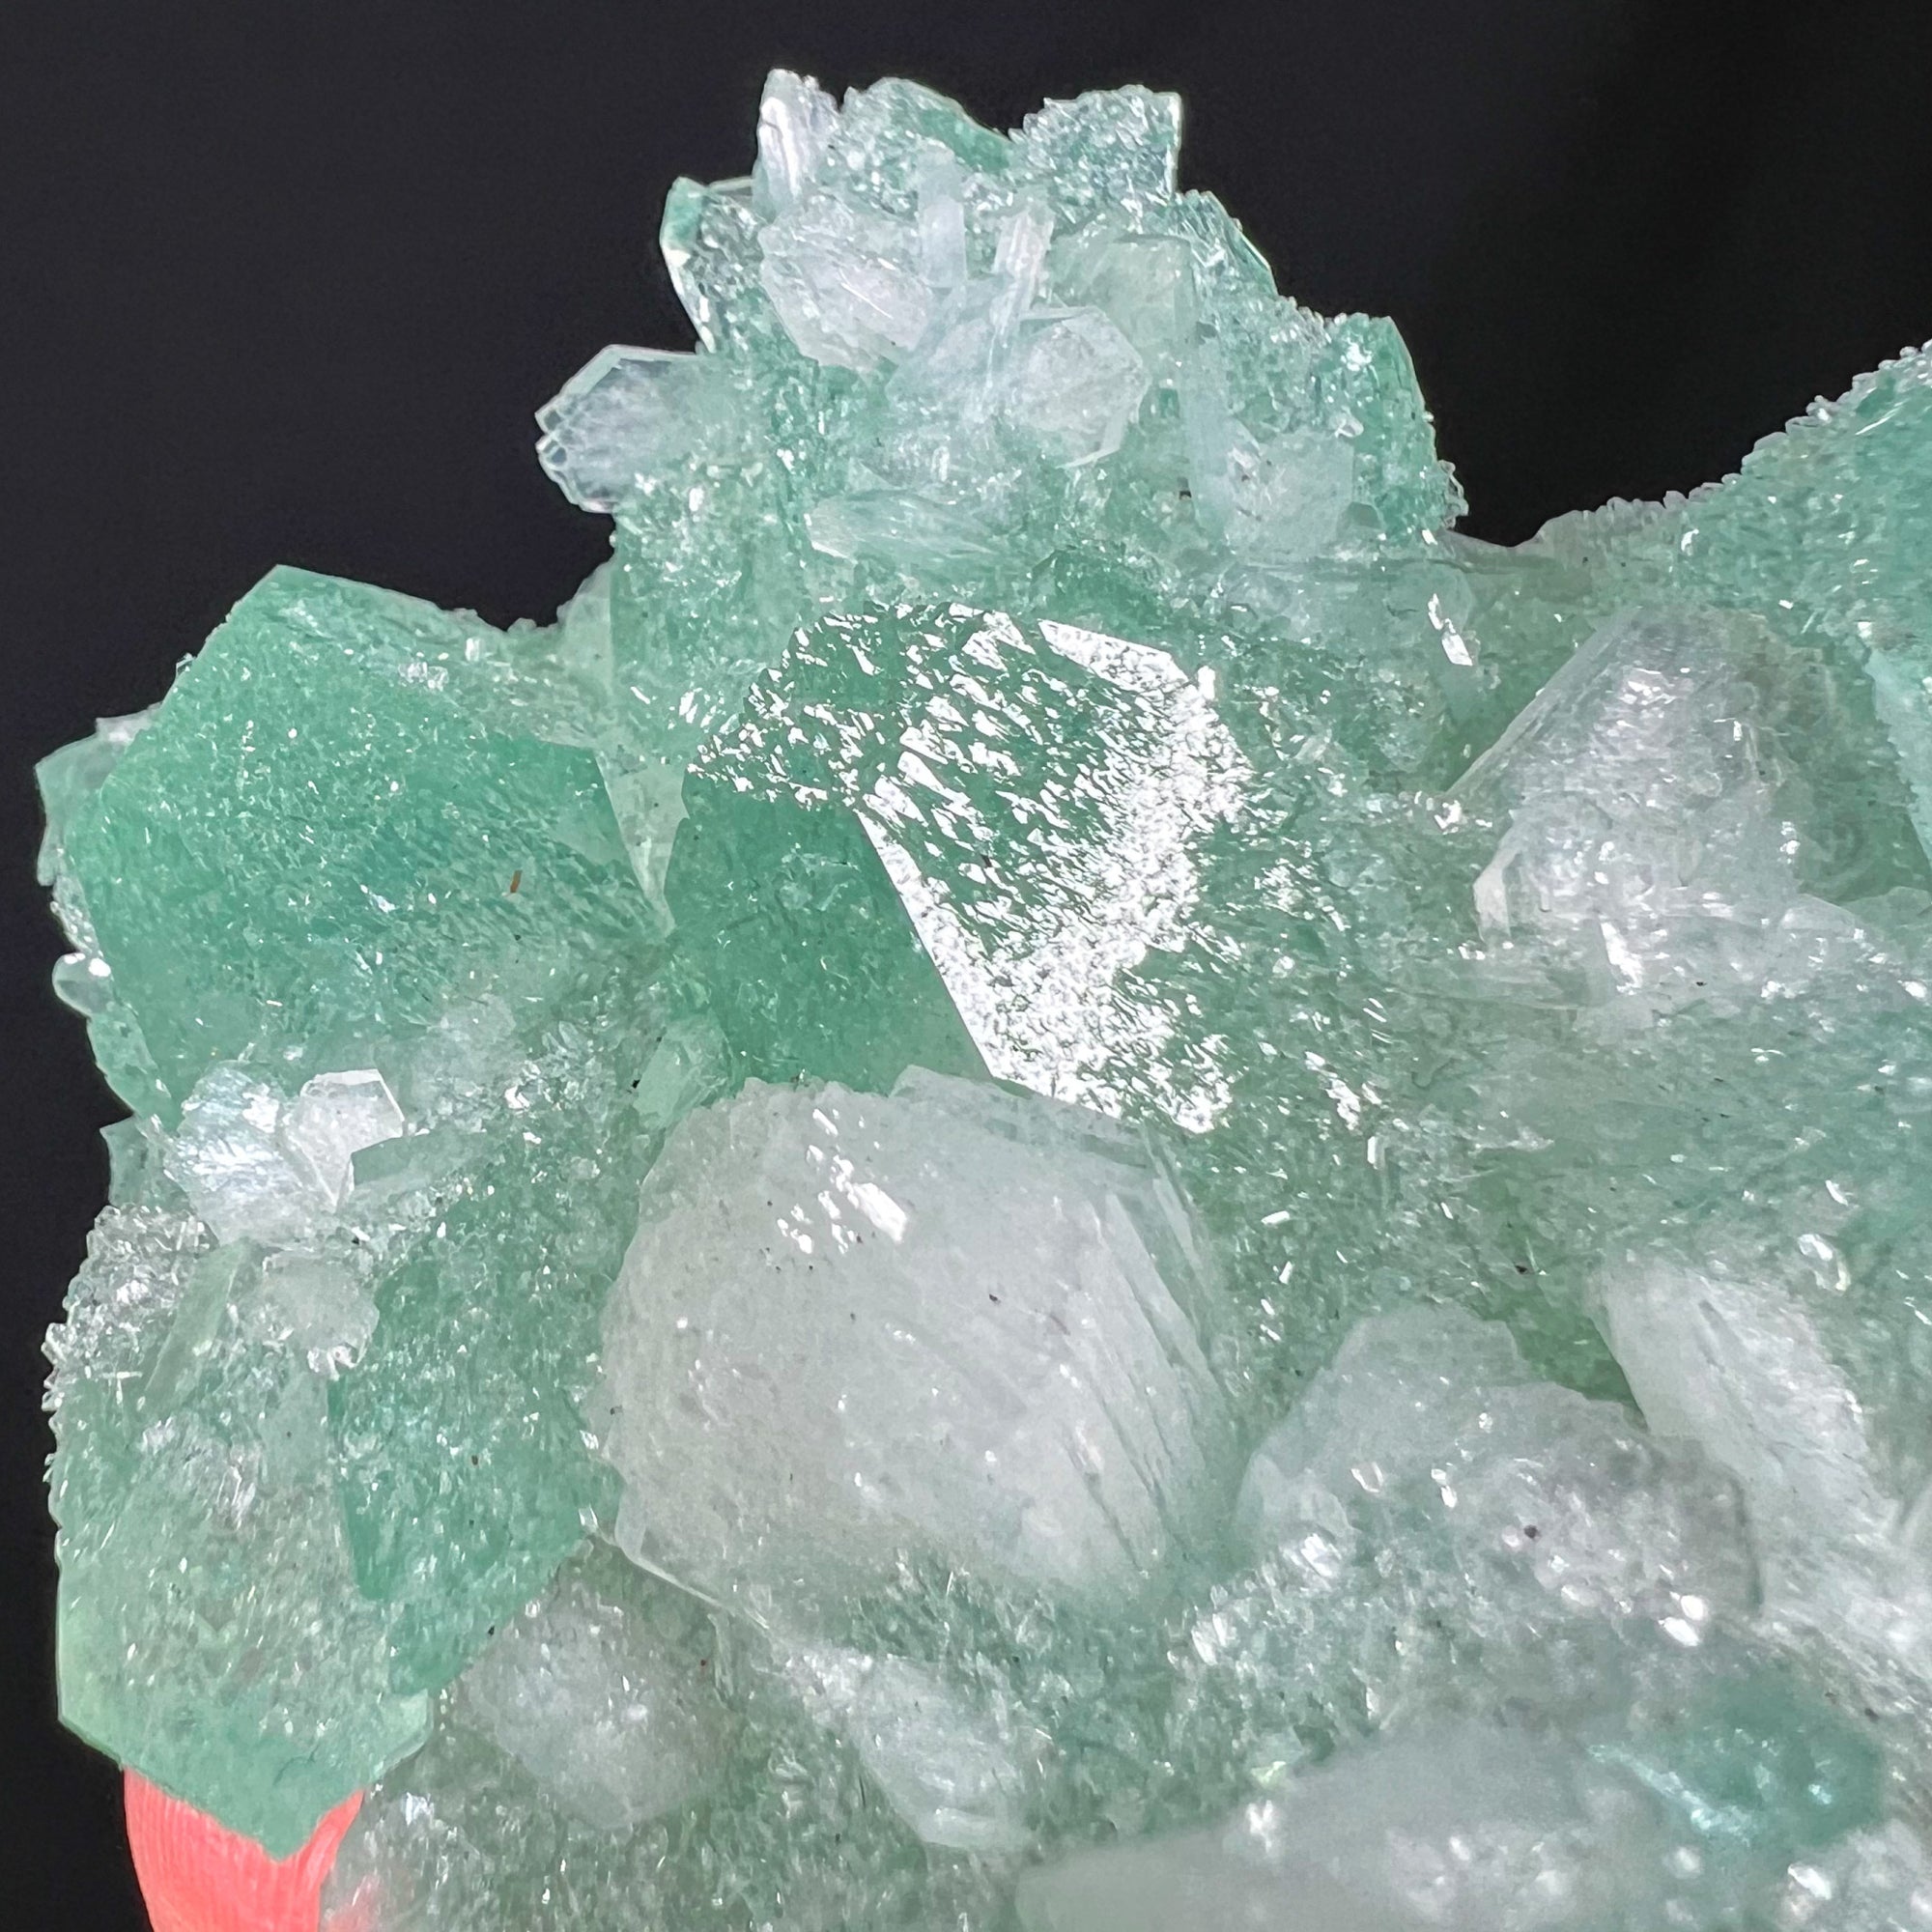 Green Apophyllite Crystals with White Stilbite Crystals